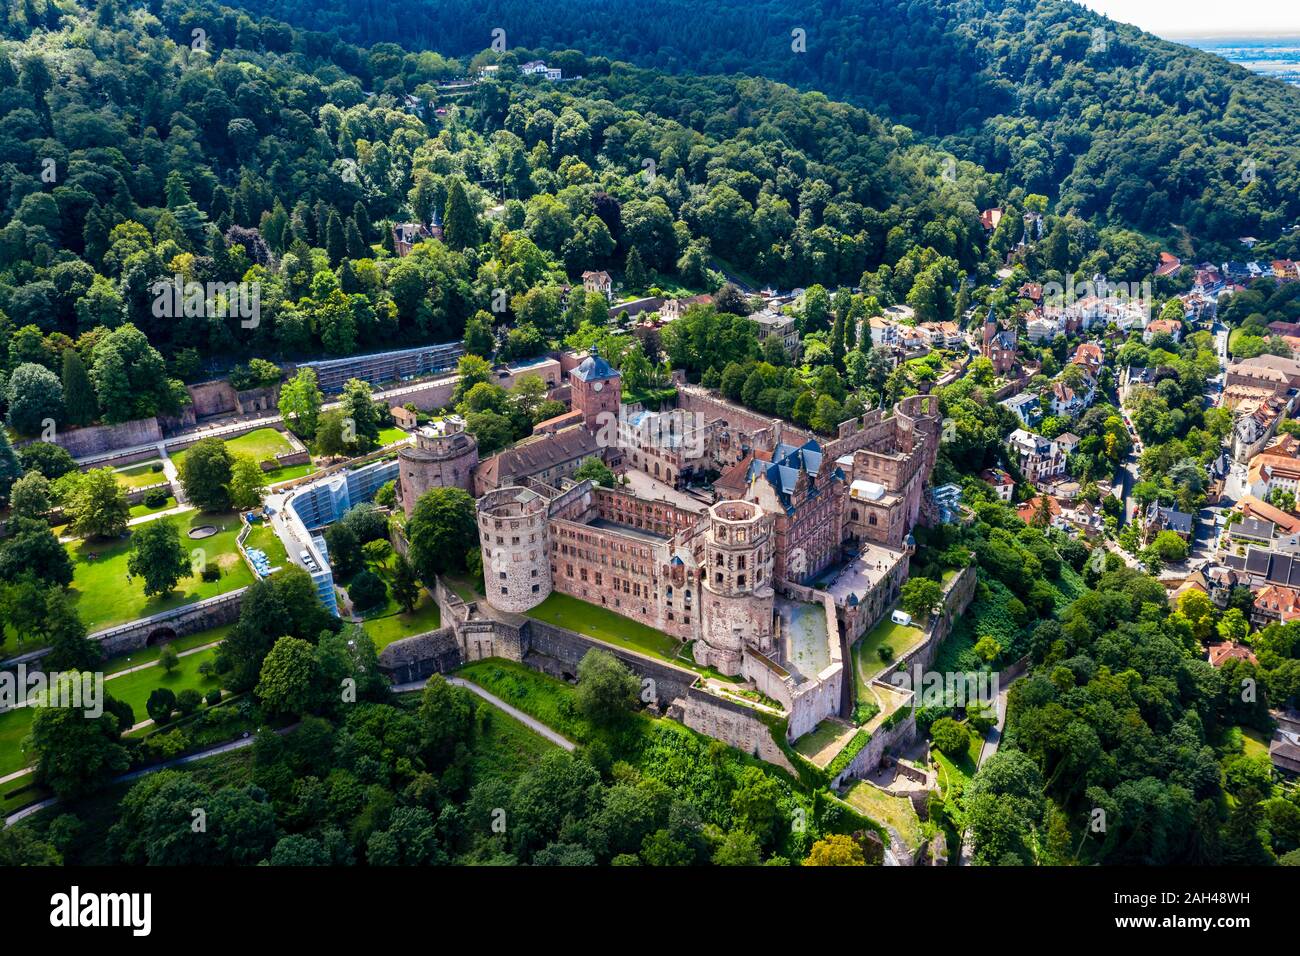 Germany, Baden-Wurttemberg, Heidelberg, Aerial view of Heidelberg Castle in summer Stock Photo